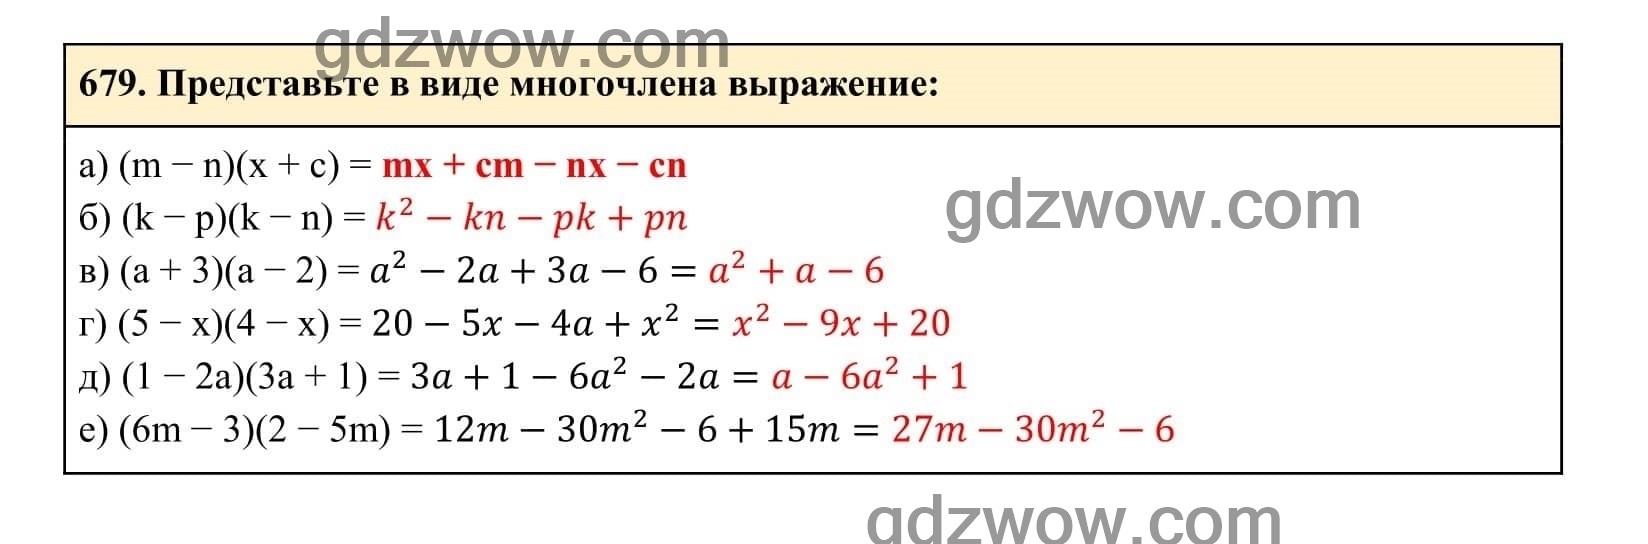 Упражнение 679 - ГДЗ по Алгебре 7 класс Учебник Макарычев (решебник) - GDZwow